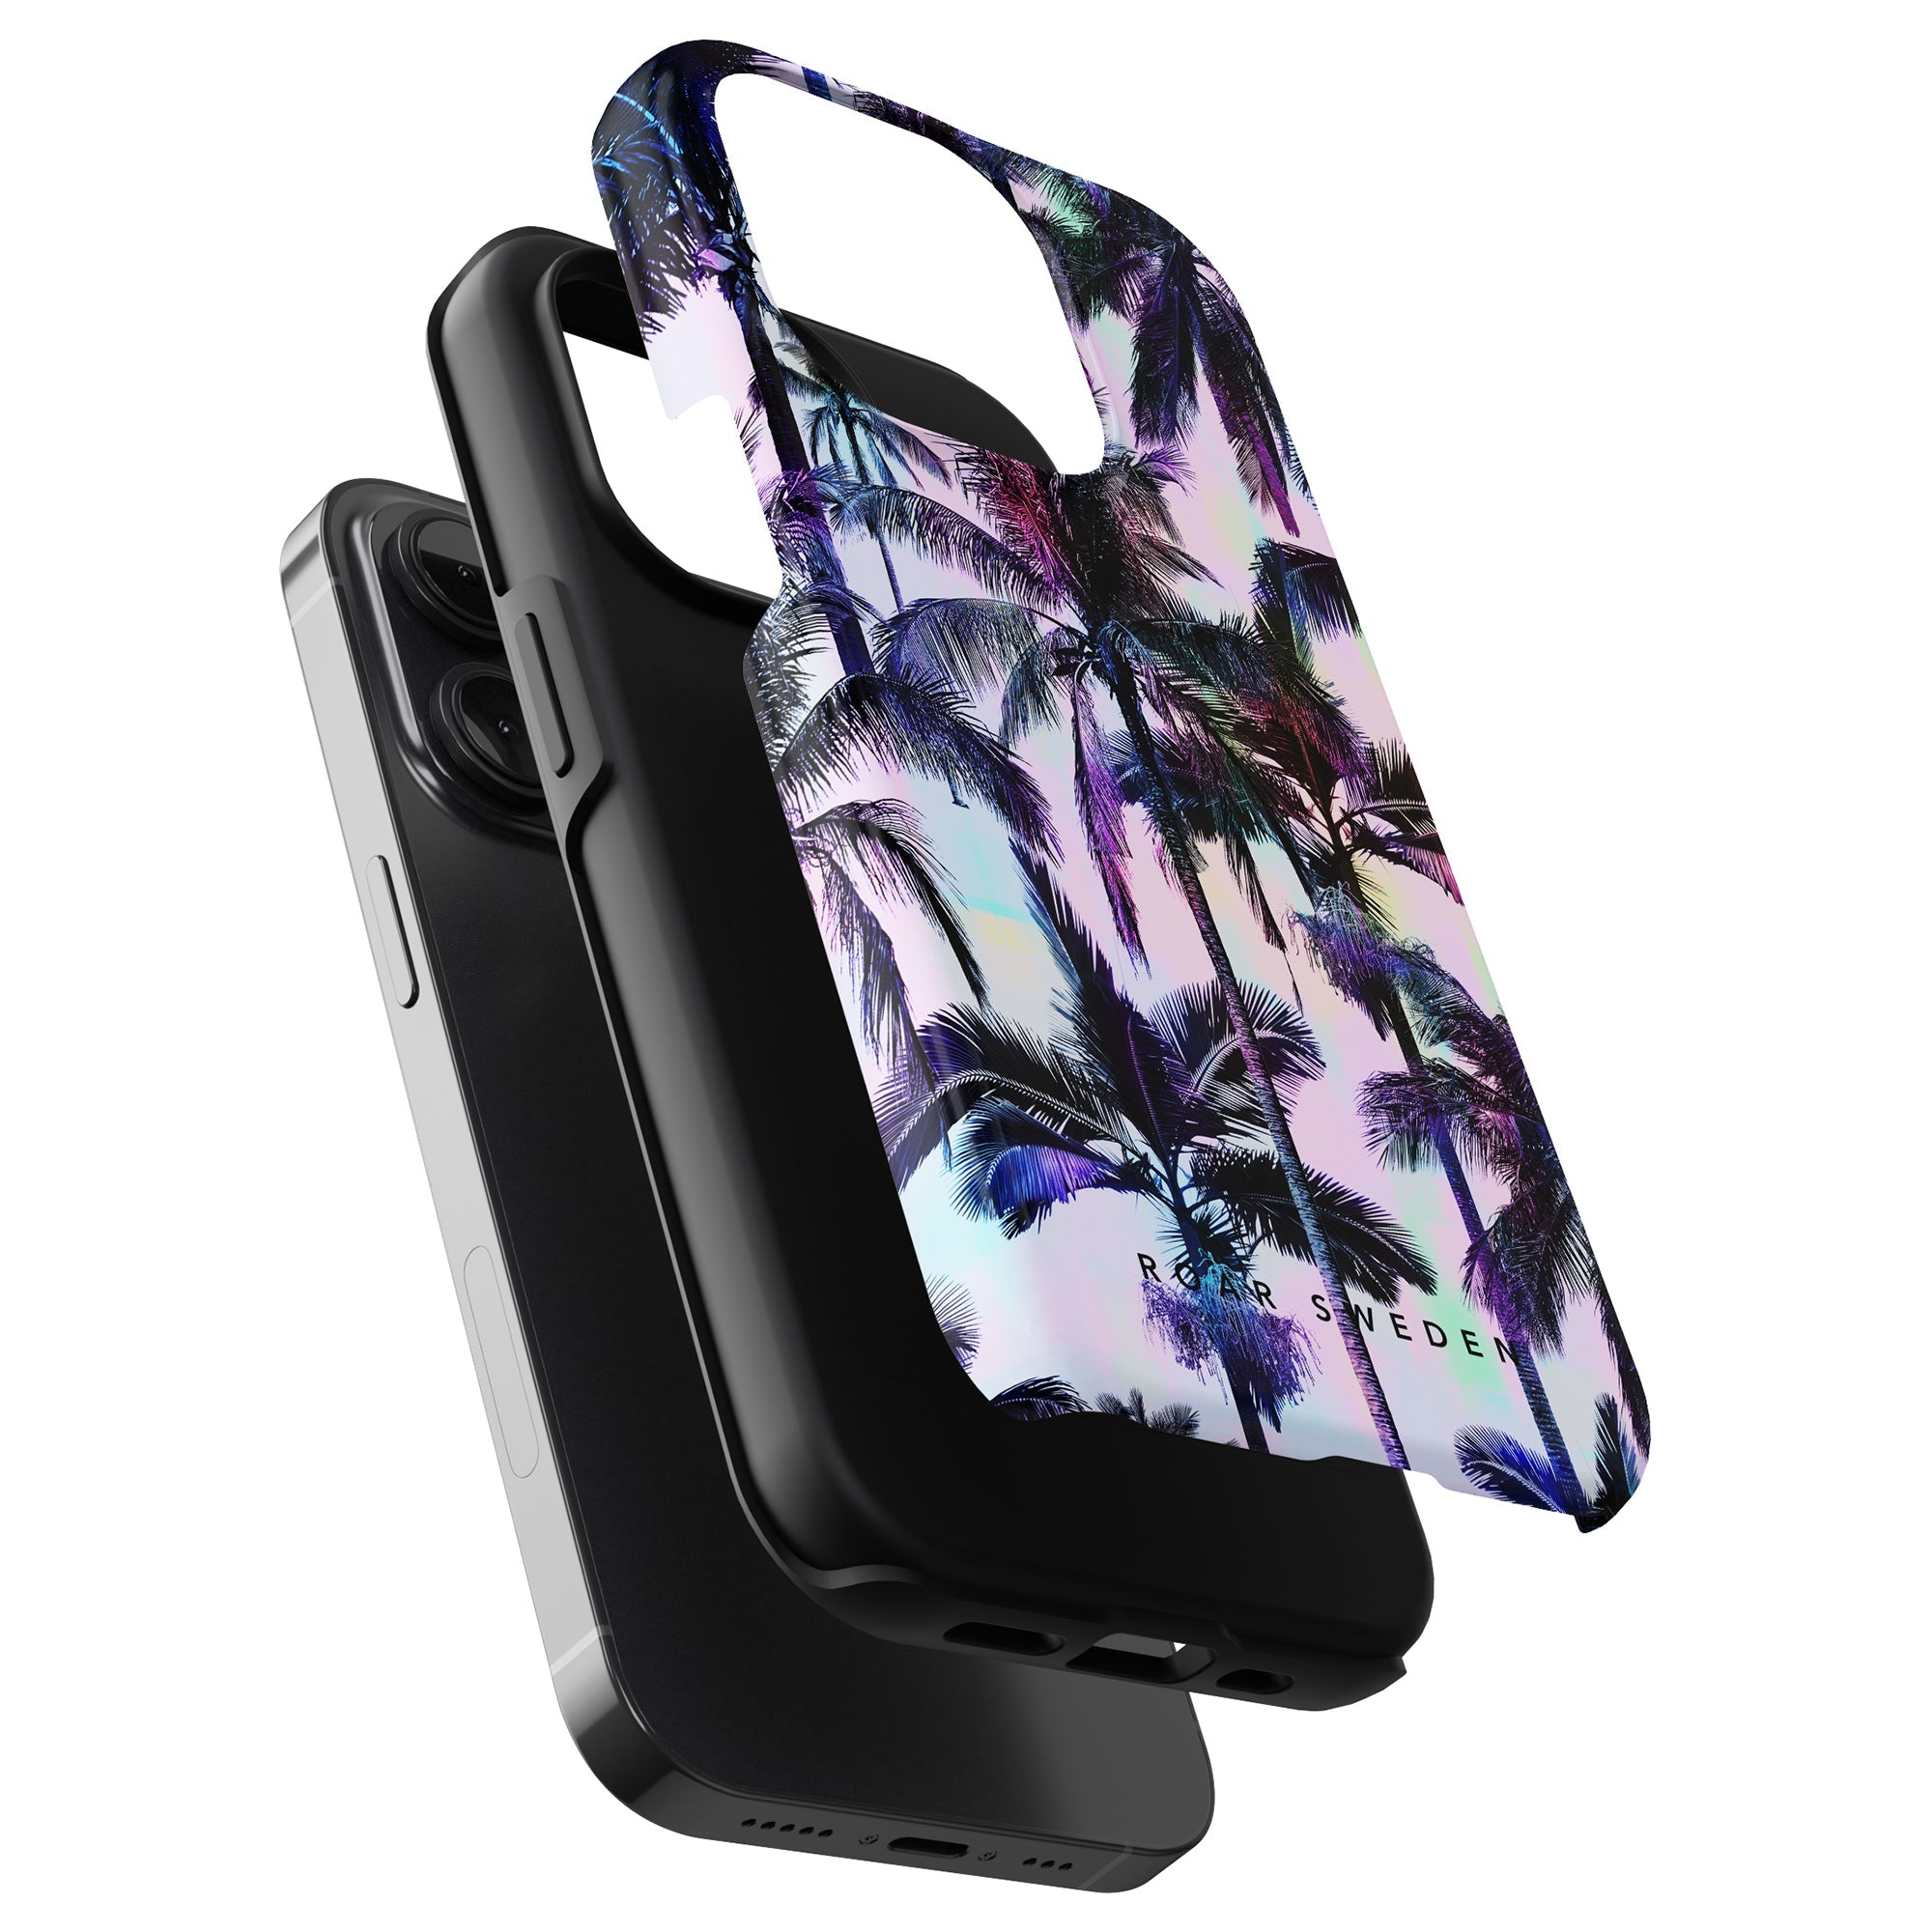 Neon Palms - Tough fodral är ett elegant iPhone-fodral som erbjuder skydd med sin livfulla palmdesign.